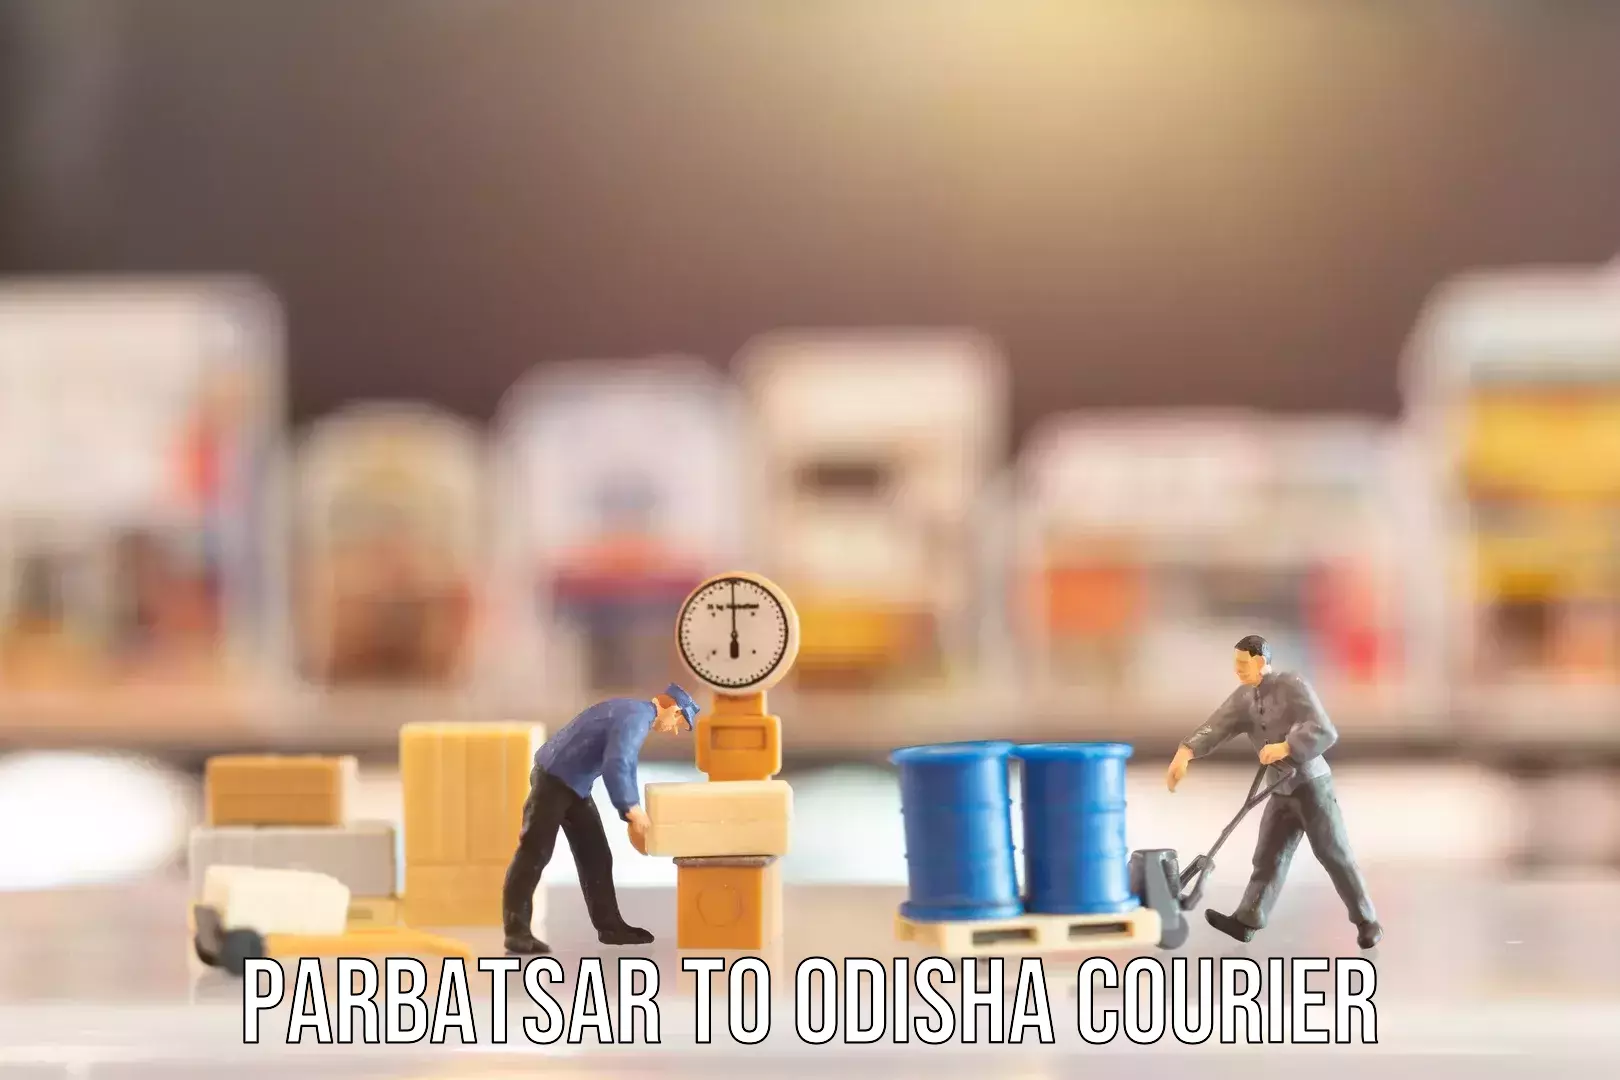 Baggage shipping rates calculator Parbatsar to Odisha